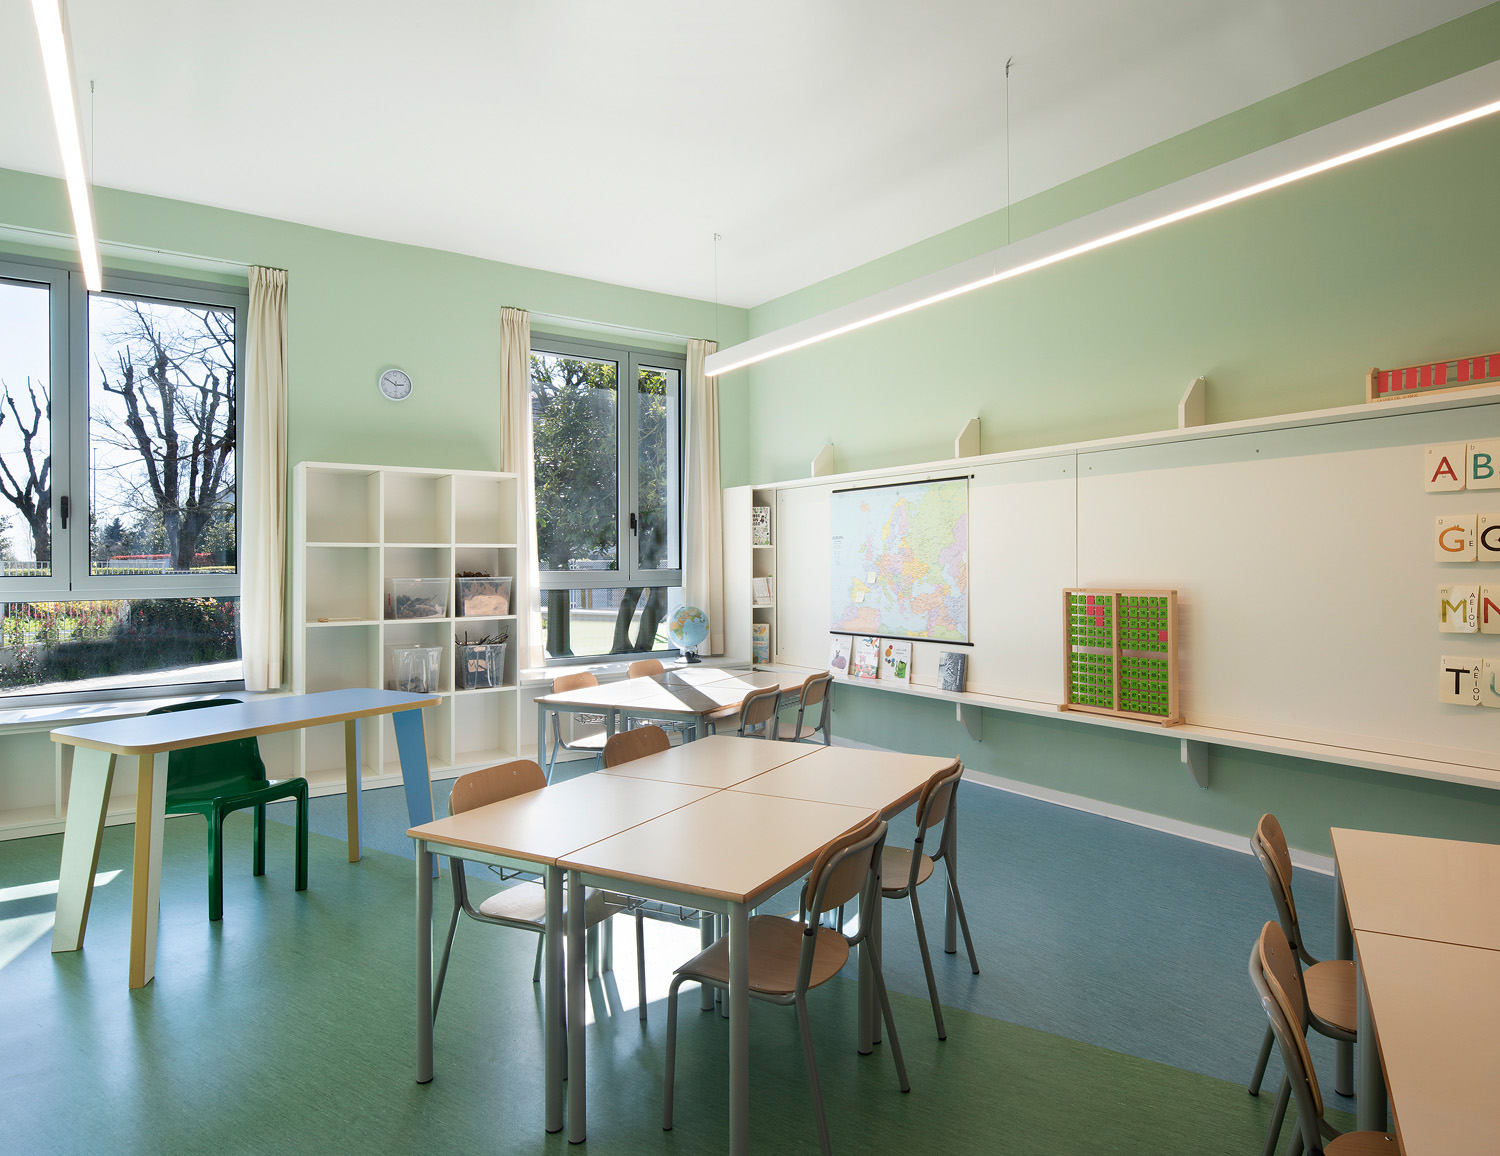 Un'aula moderna con una grande lavagna, pareti verdi, tavoli e sedie. Attraverso le ampie finestre è possibile osservare le piante.